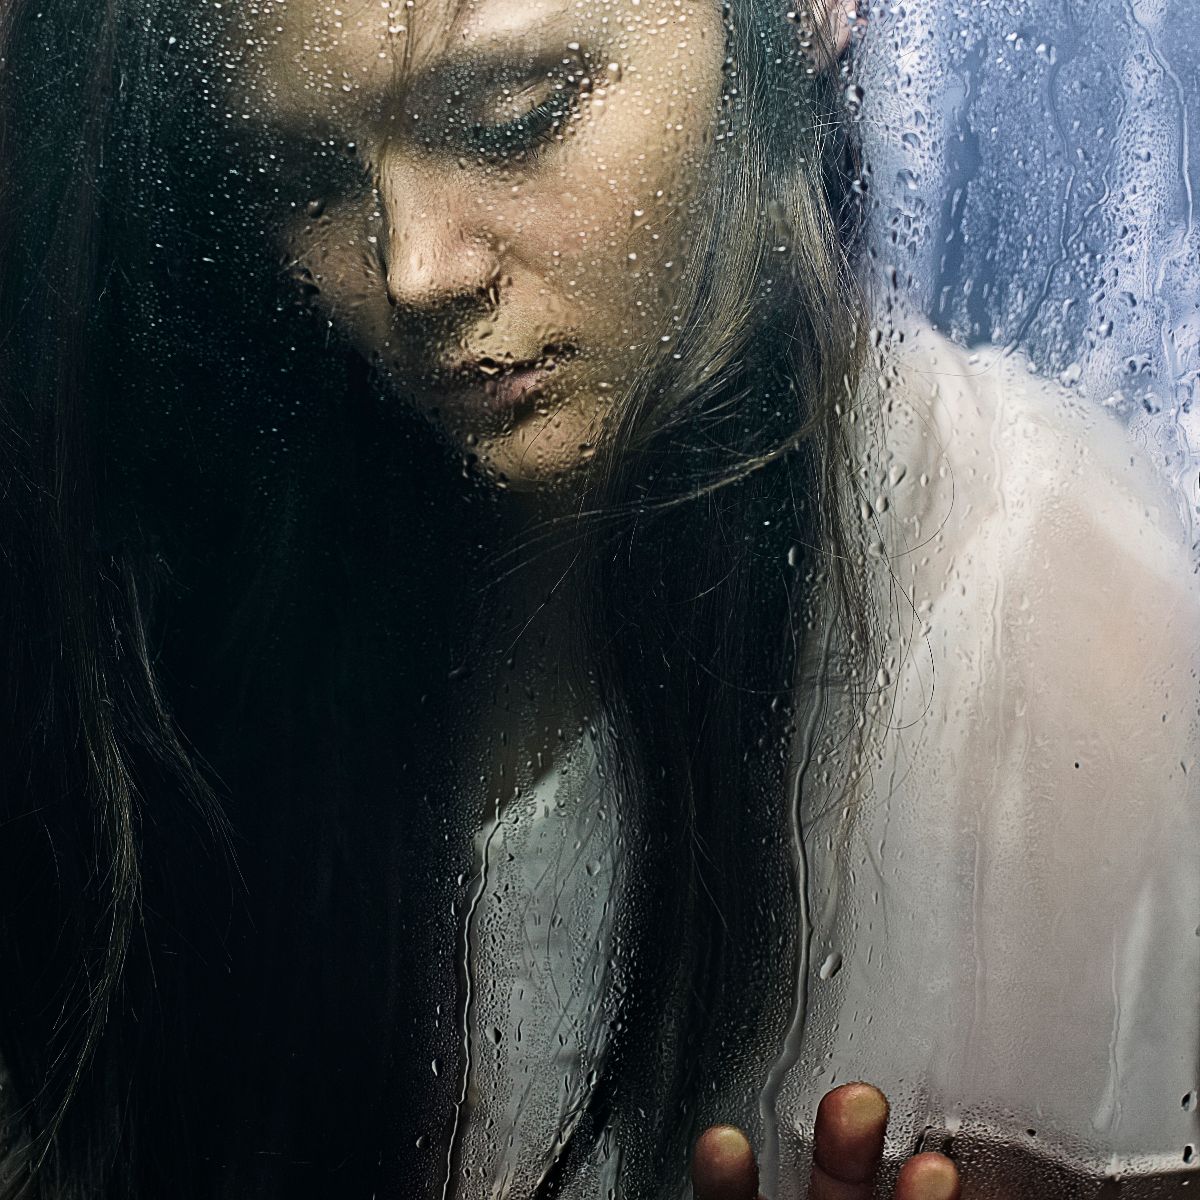 Mujer mirando la lluvia en una ventana